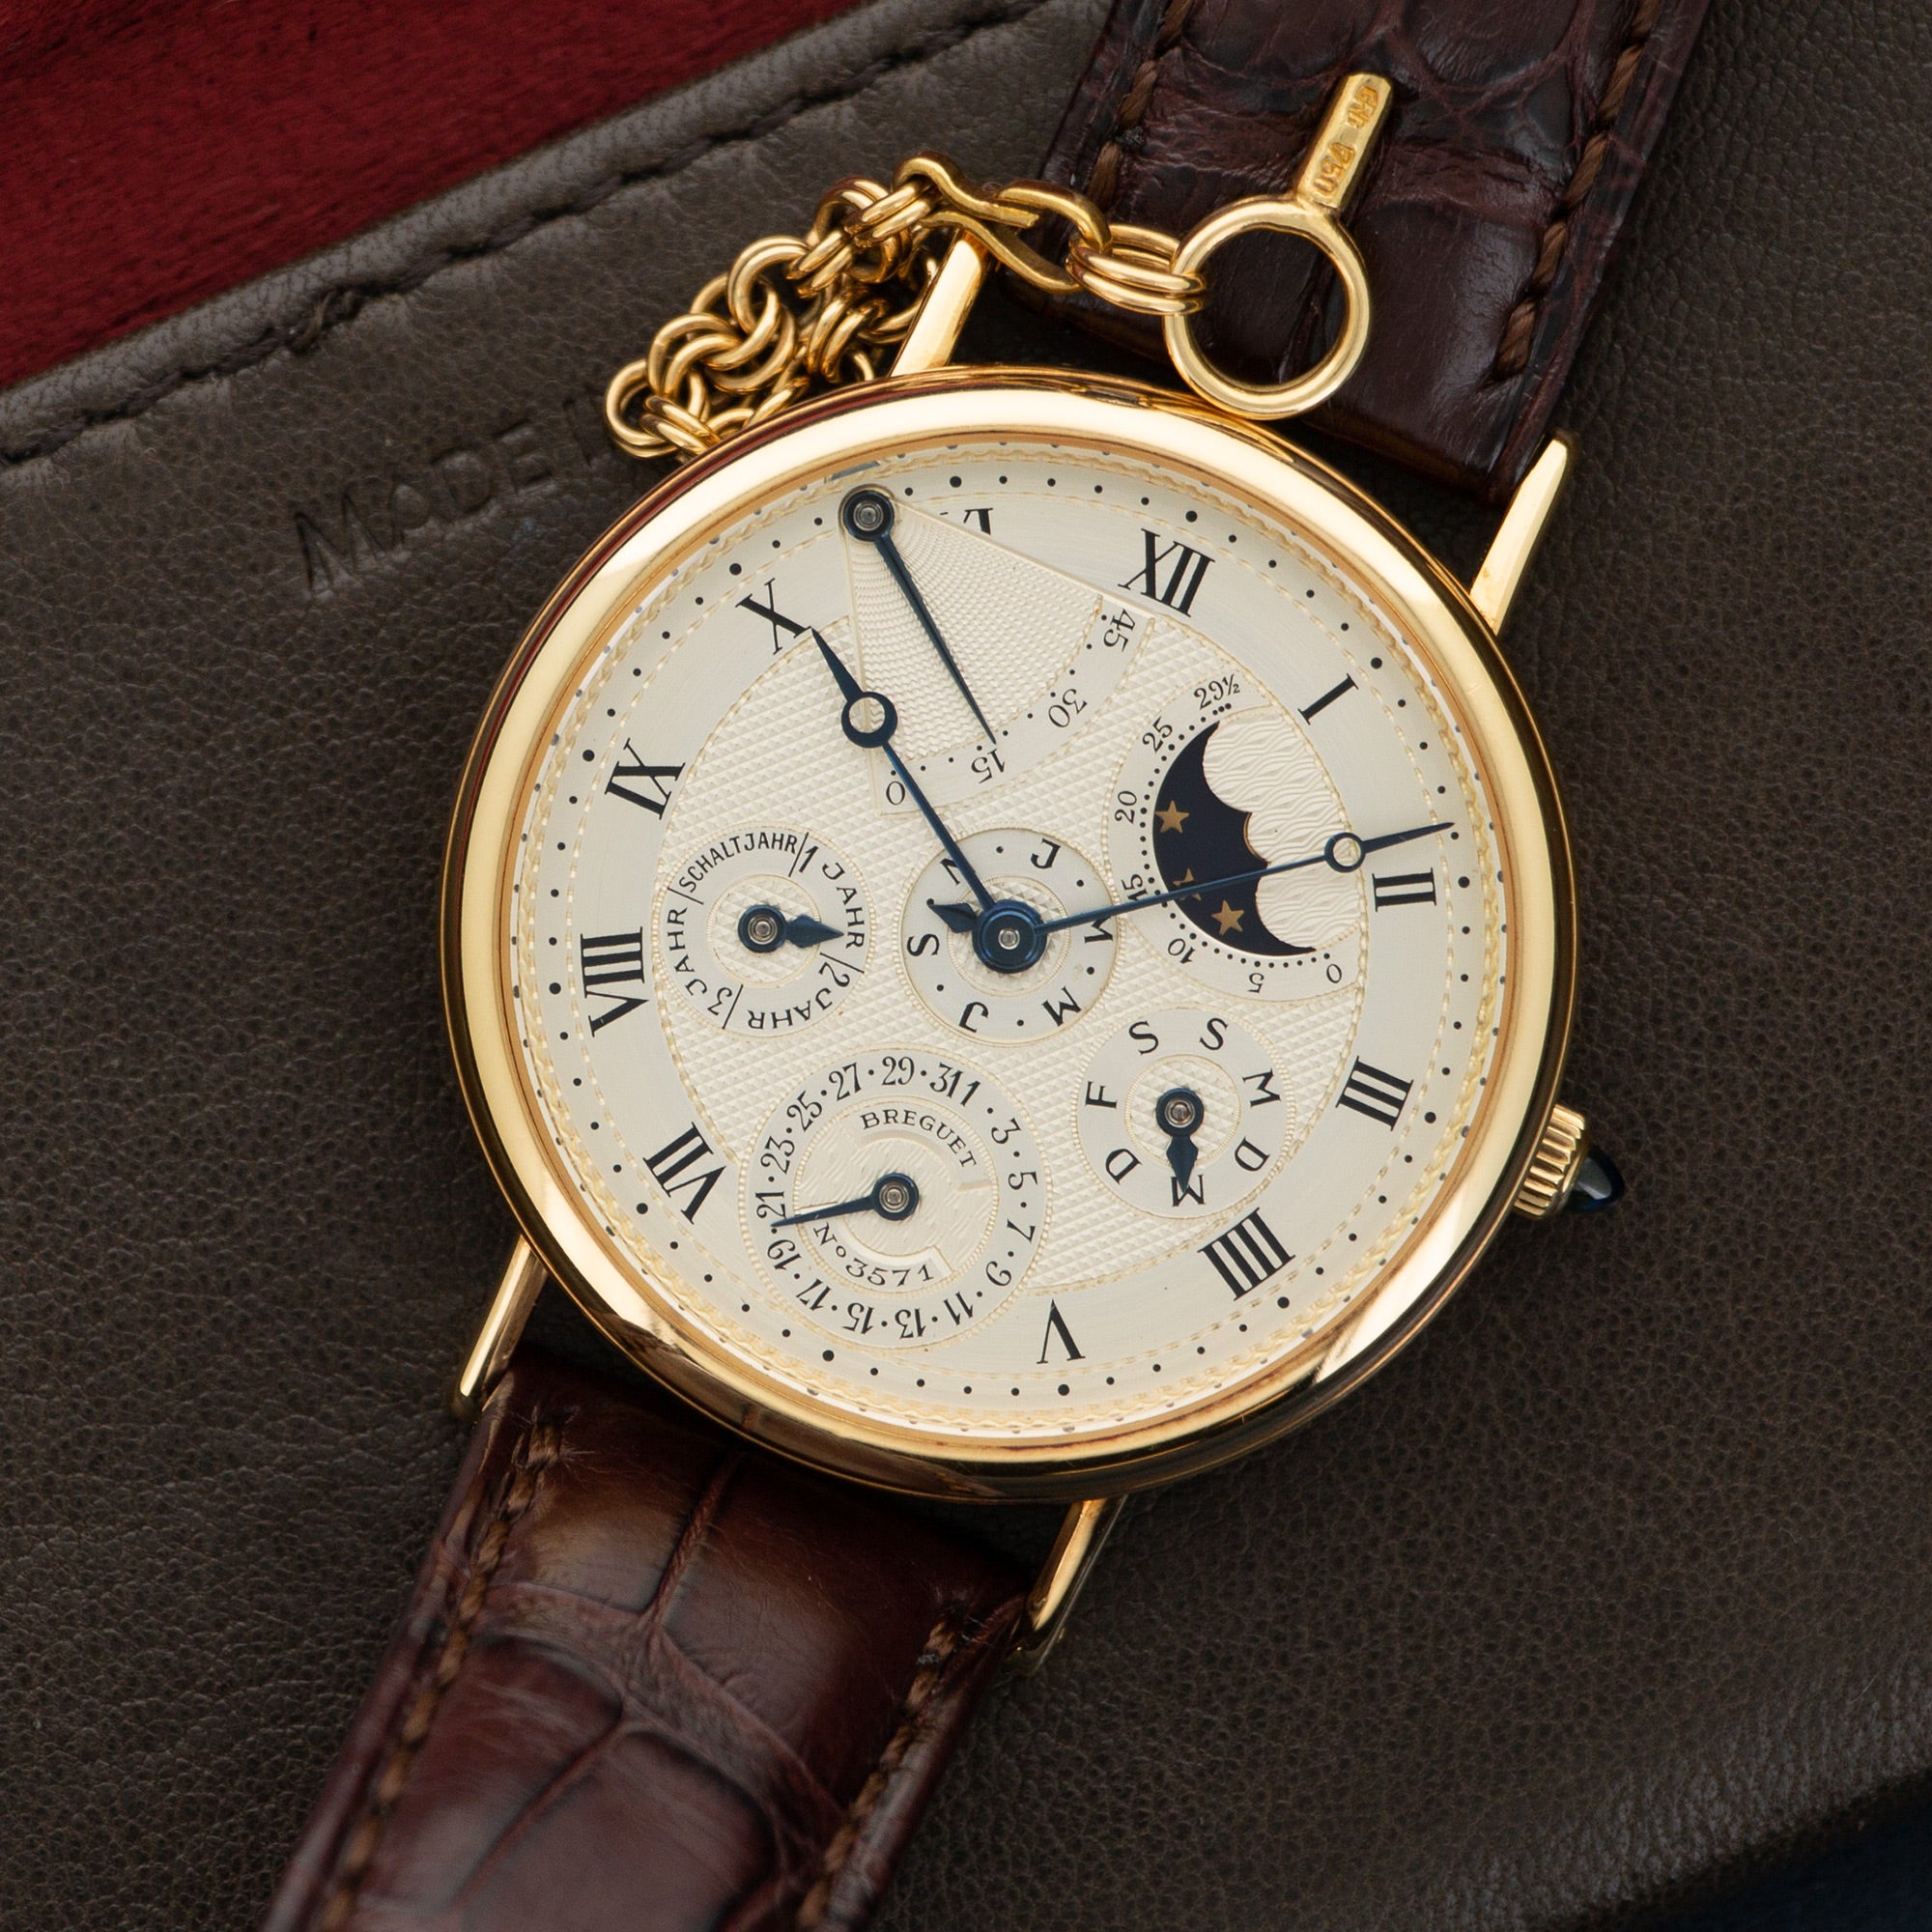 Breguet - Breguet Yellow Gold Perpetual Calendar Power Reserve Watch Ref. 3571 - The Keystone Watches